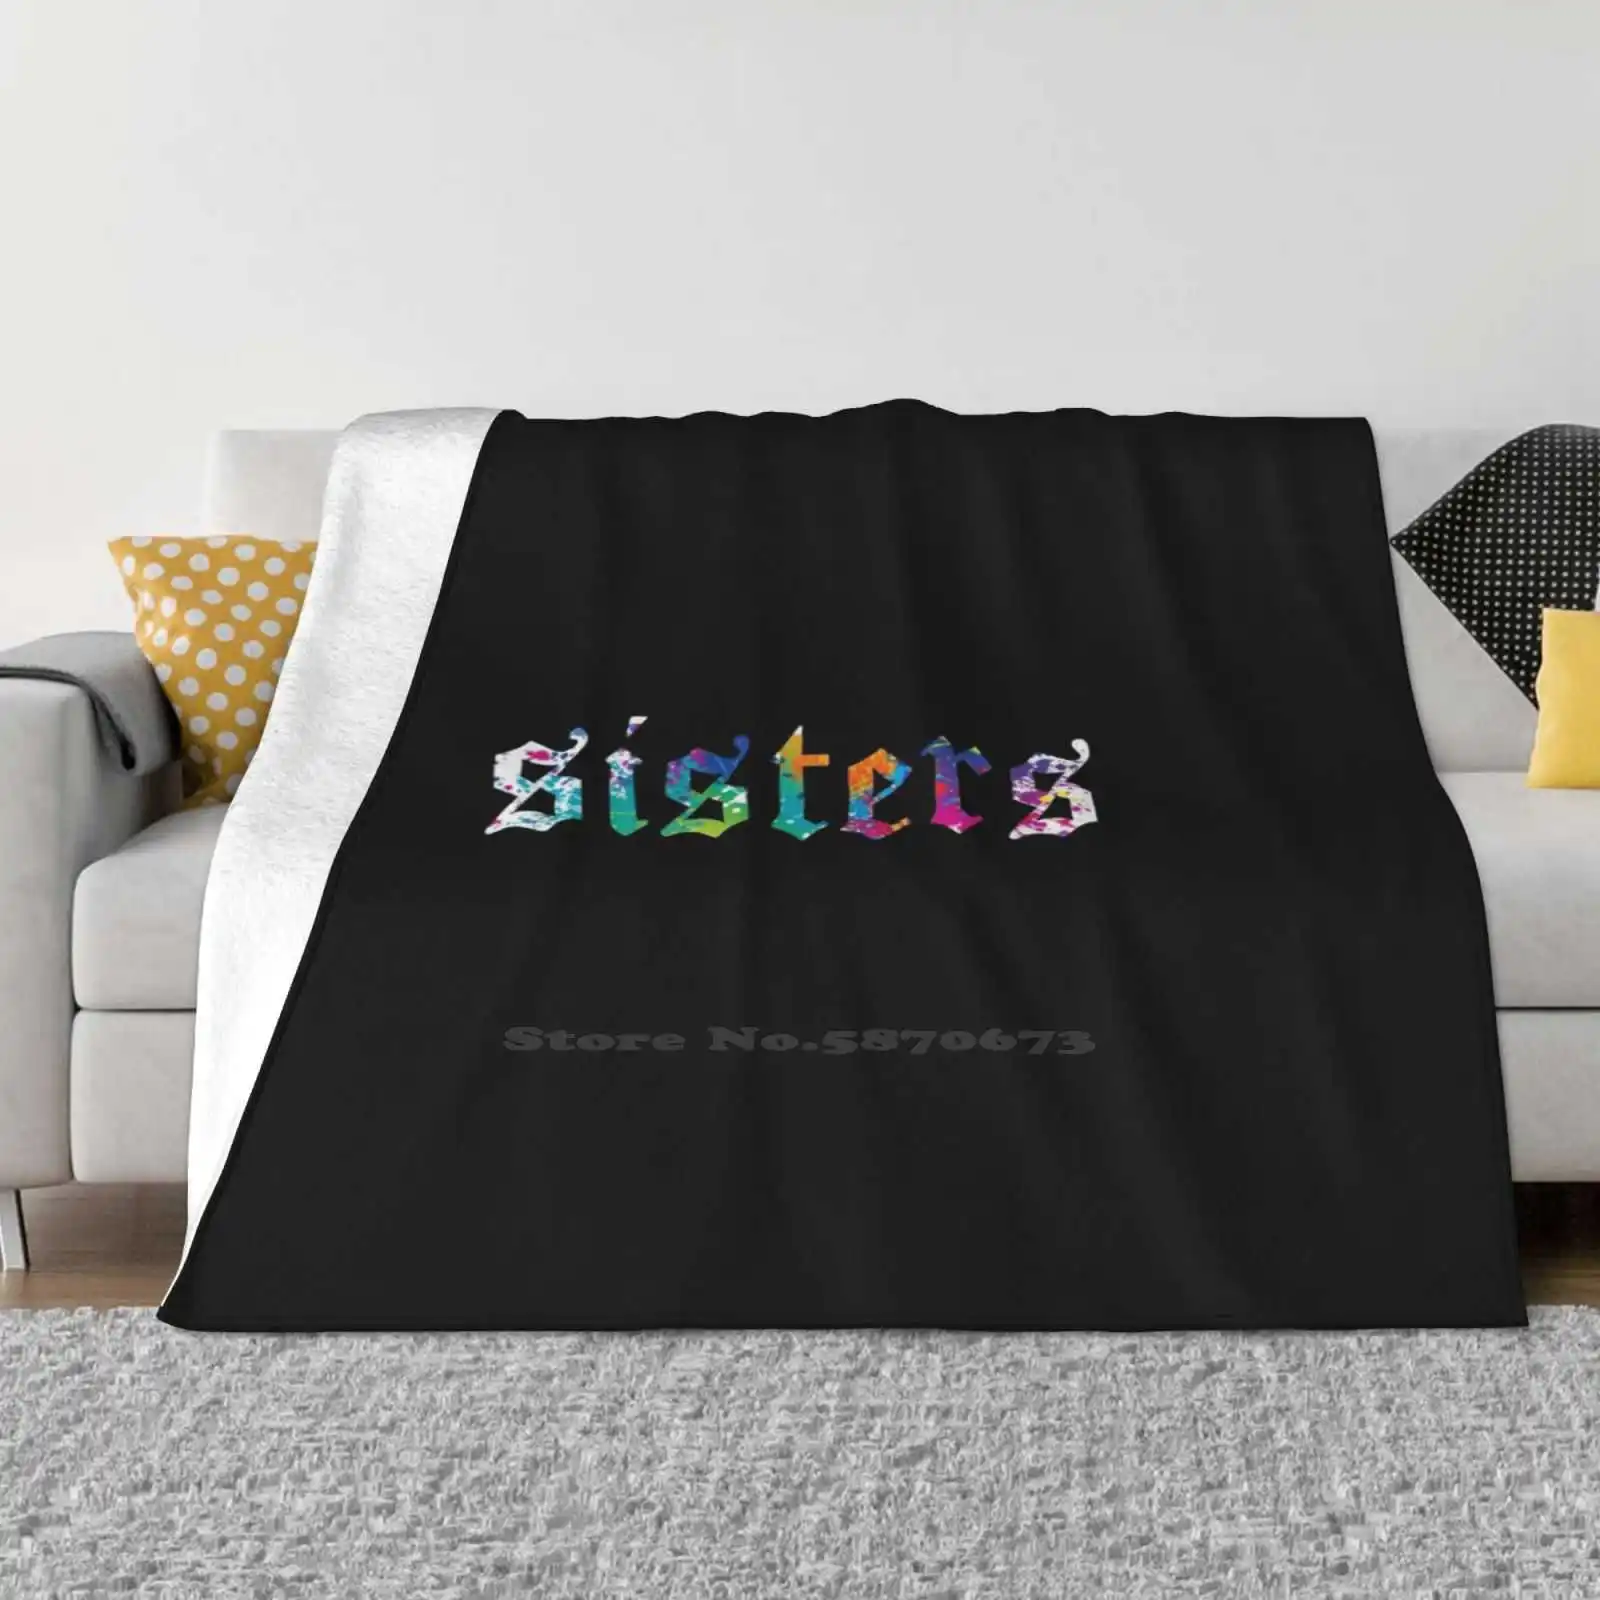 

James-Sister одеяло с рисунком брызг (черный) модное смешное мягкое одеяло в трендовом стиле красивый макияж Youtube